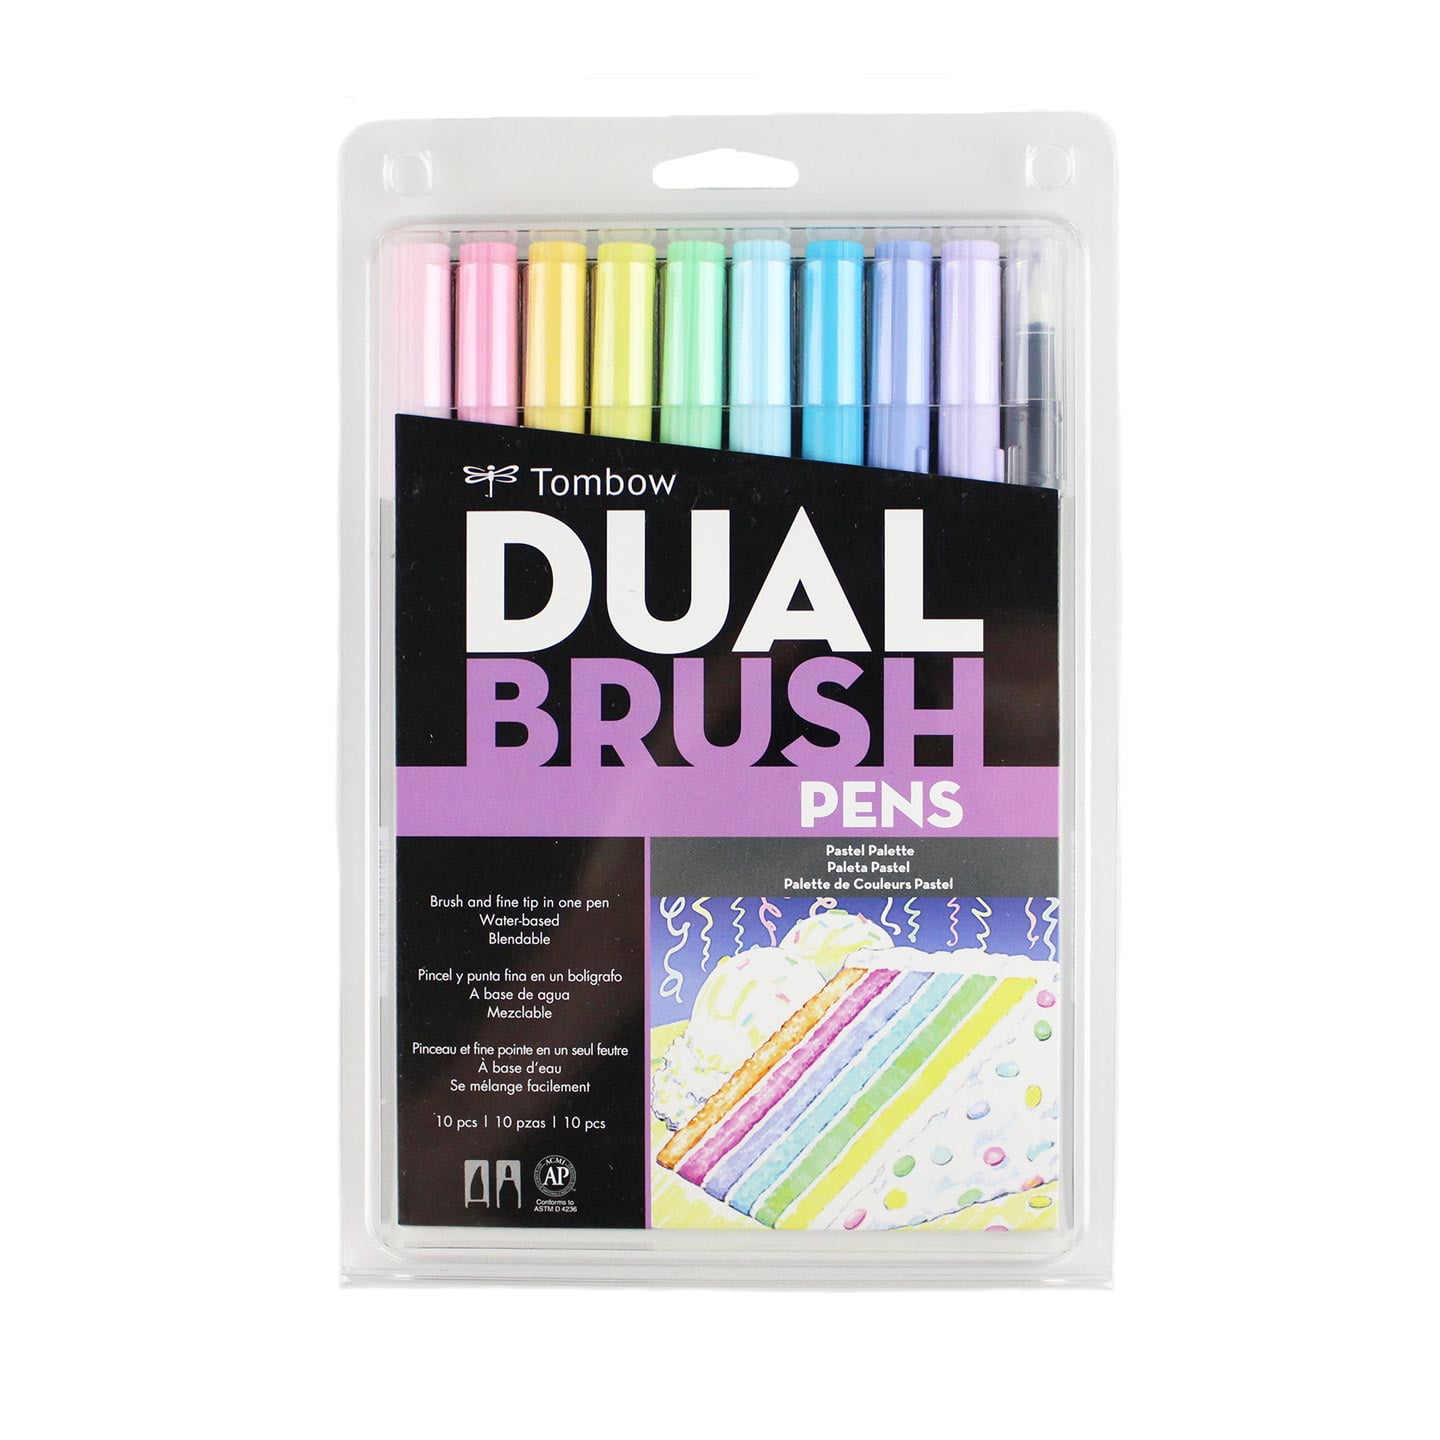 WRITECH Arts Sign Brush Pen Brush Tip Marker Felt Tip Water Based